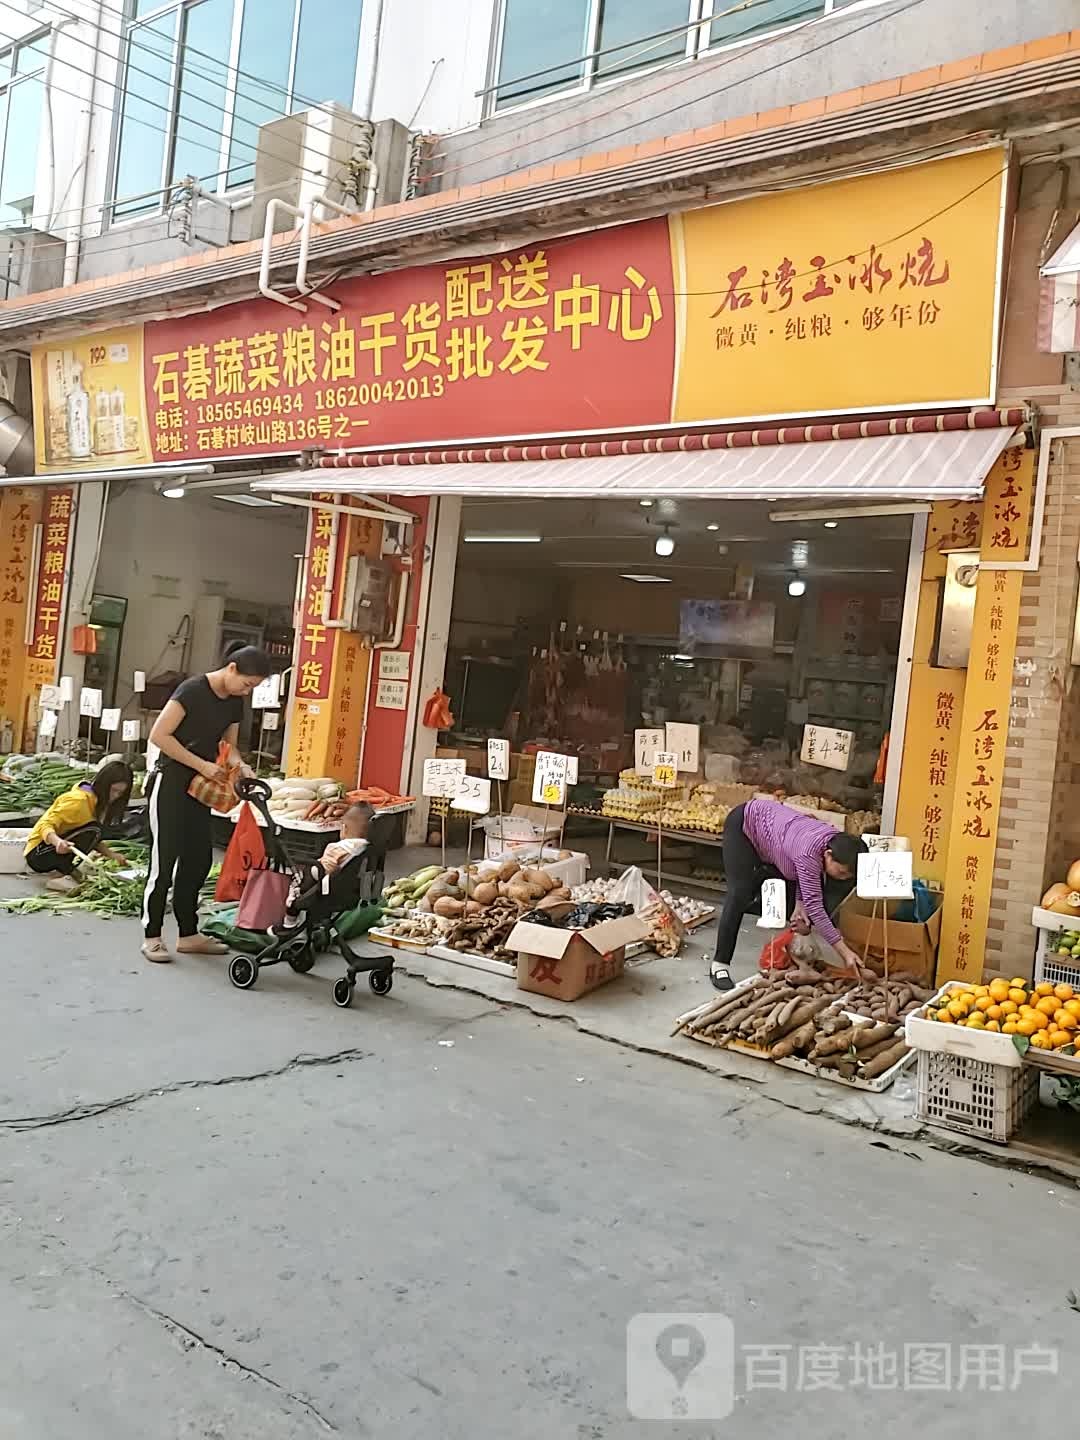 标签:购物 农贸 粮油店石碁蔬菜粮油干货配送批发中心共多少人浏览